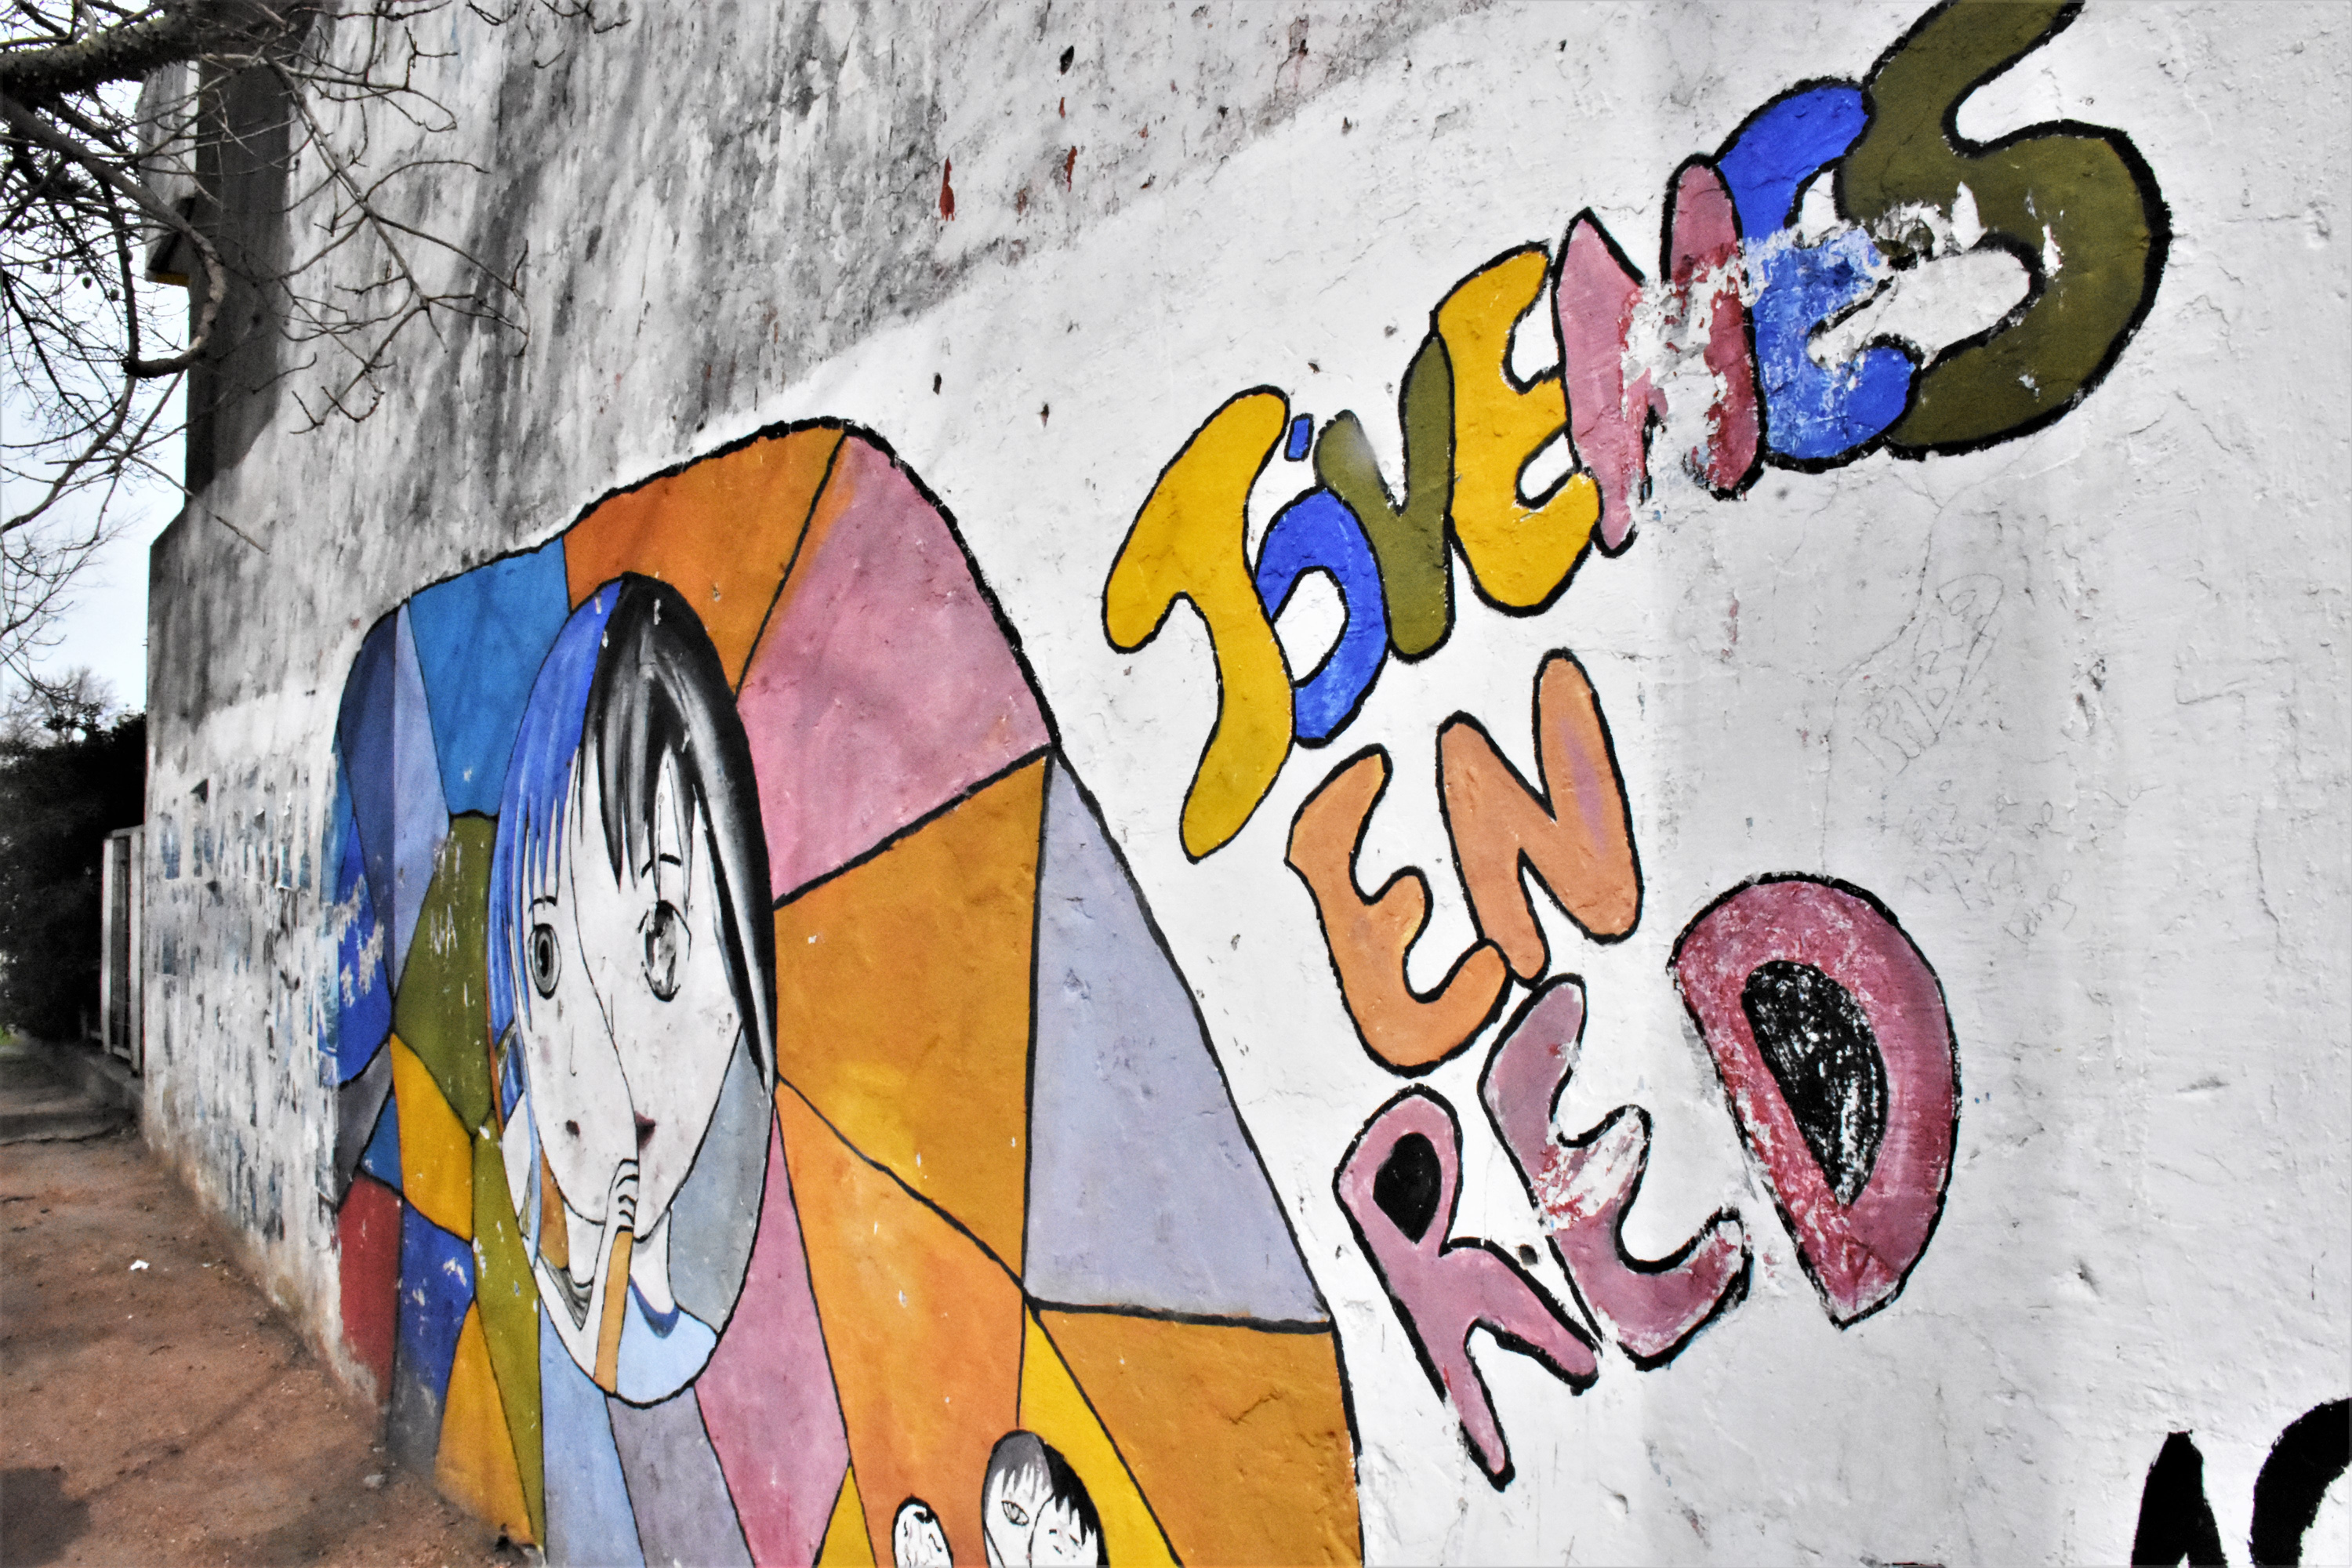 Mural de la policlìnica Punta de Rieles antes de los trabajos de pintura